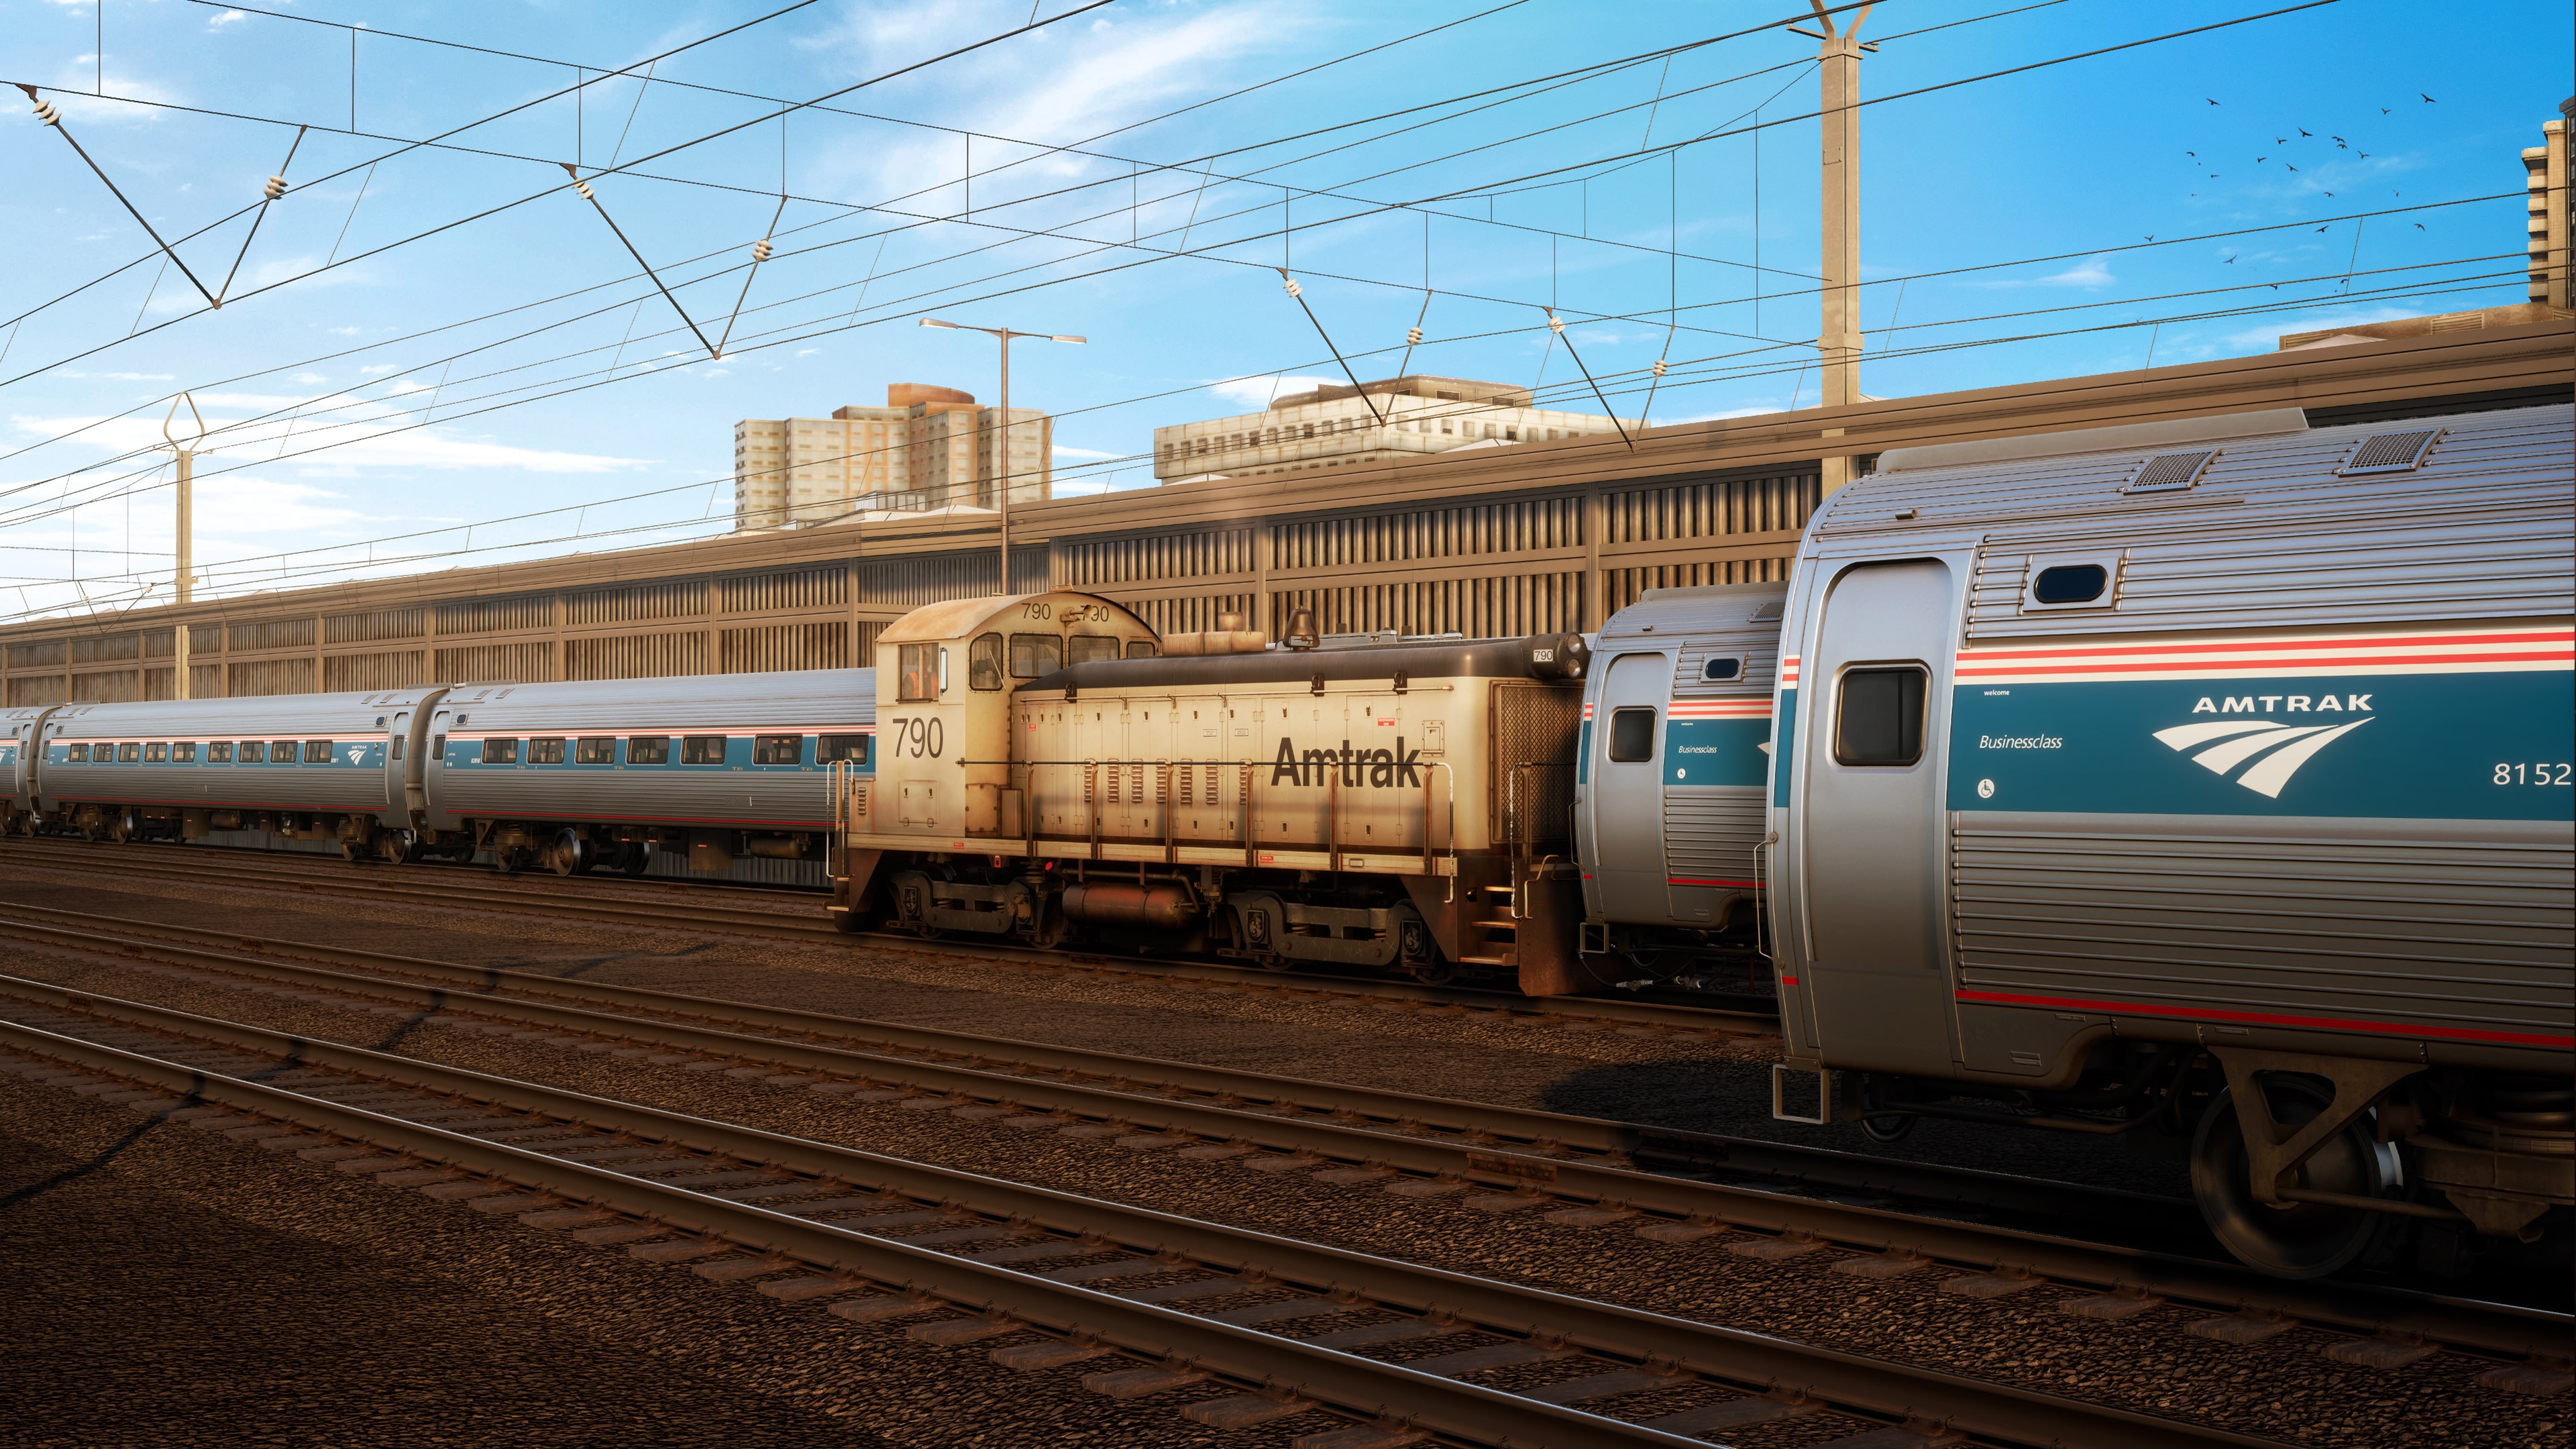 Train Sim World: Amtrak SW1000R Loco Add-On